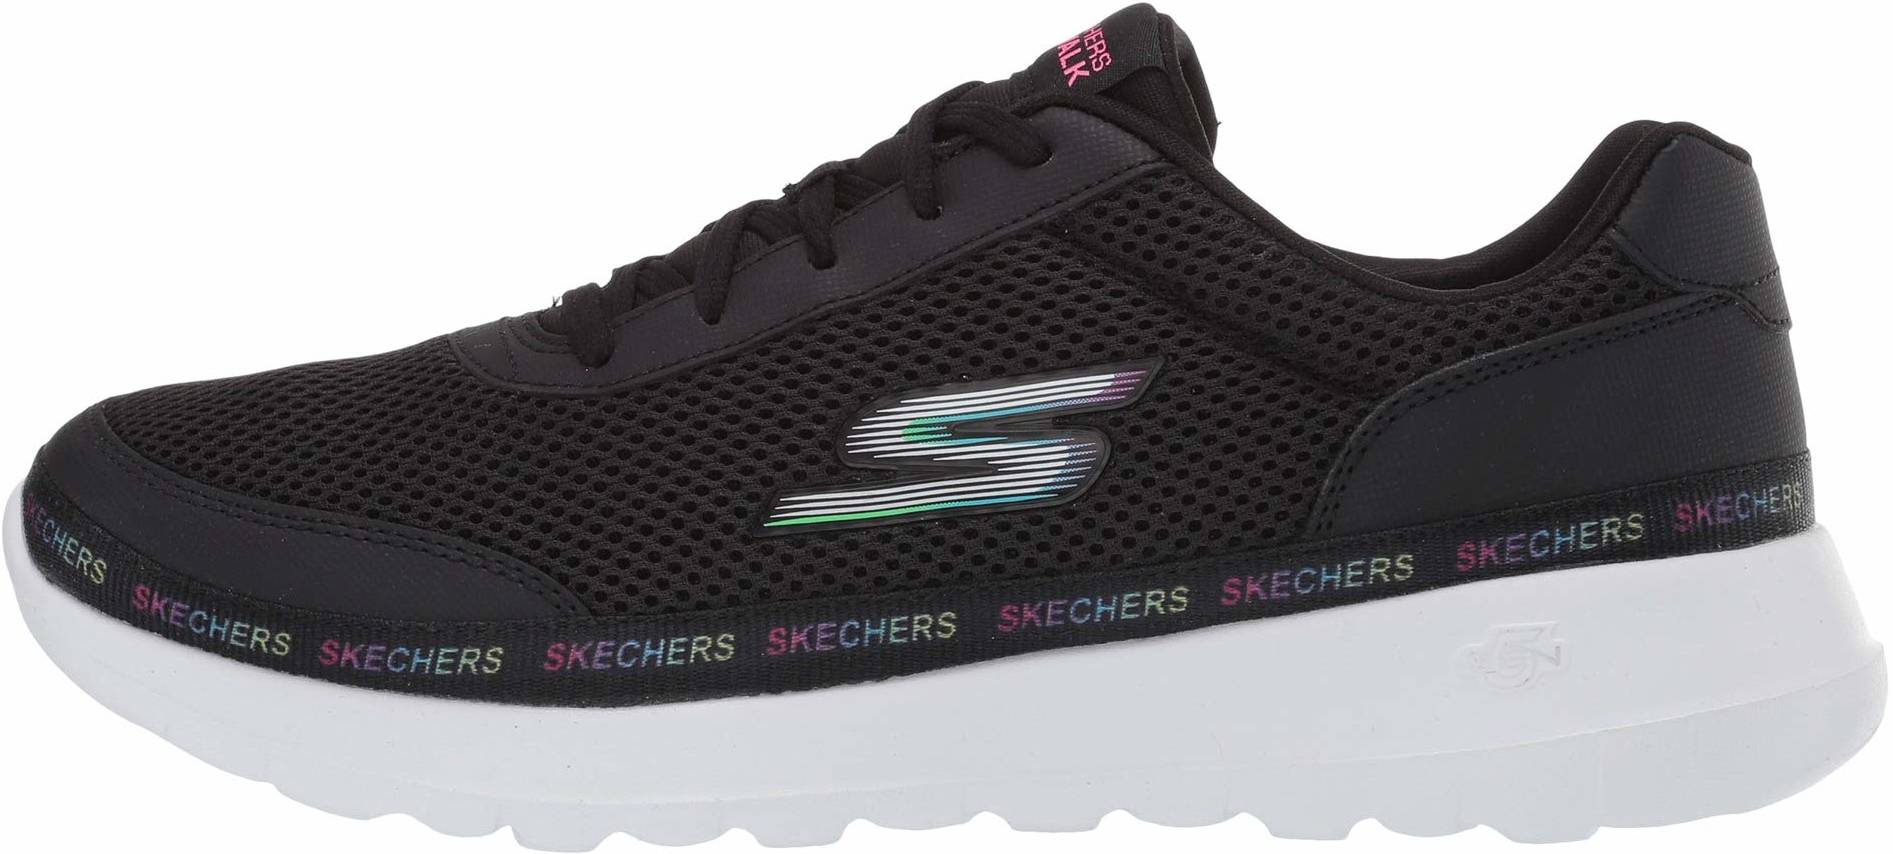 skechers joy walk shoes